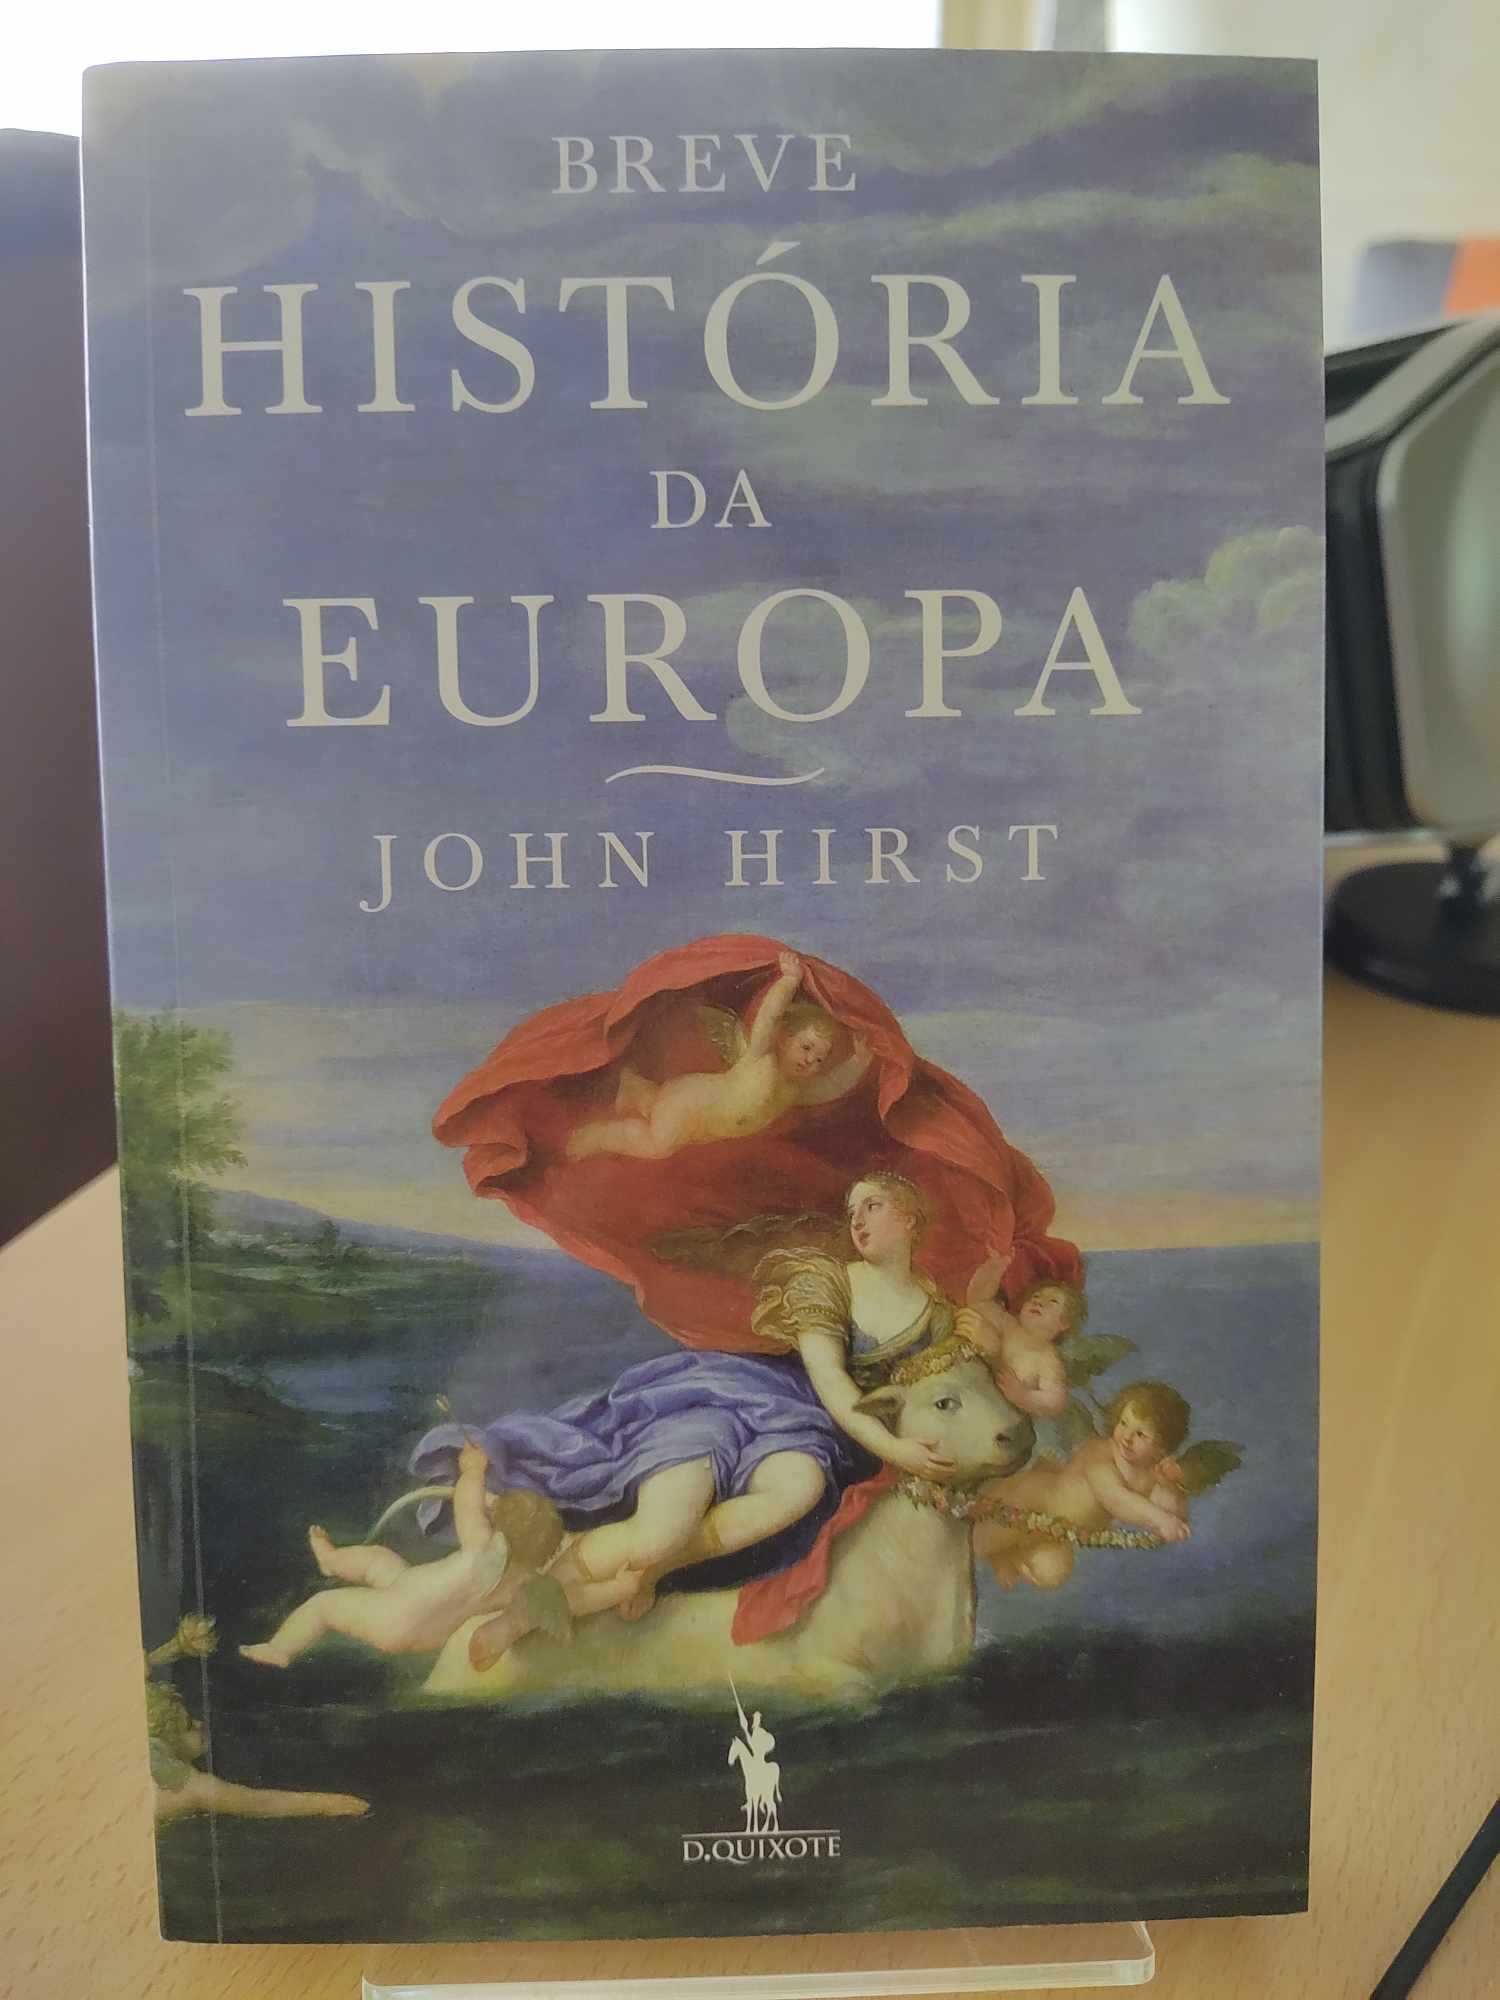 Livro “Breve História da Europa”